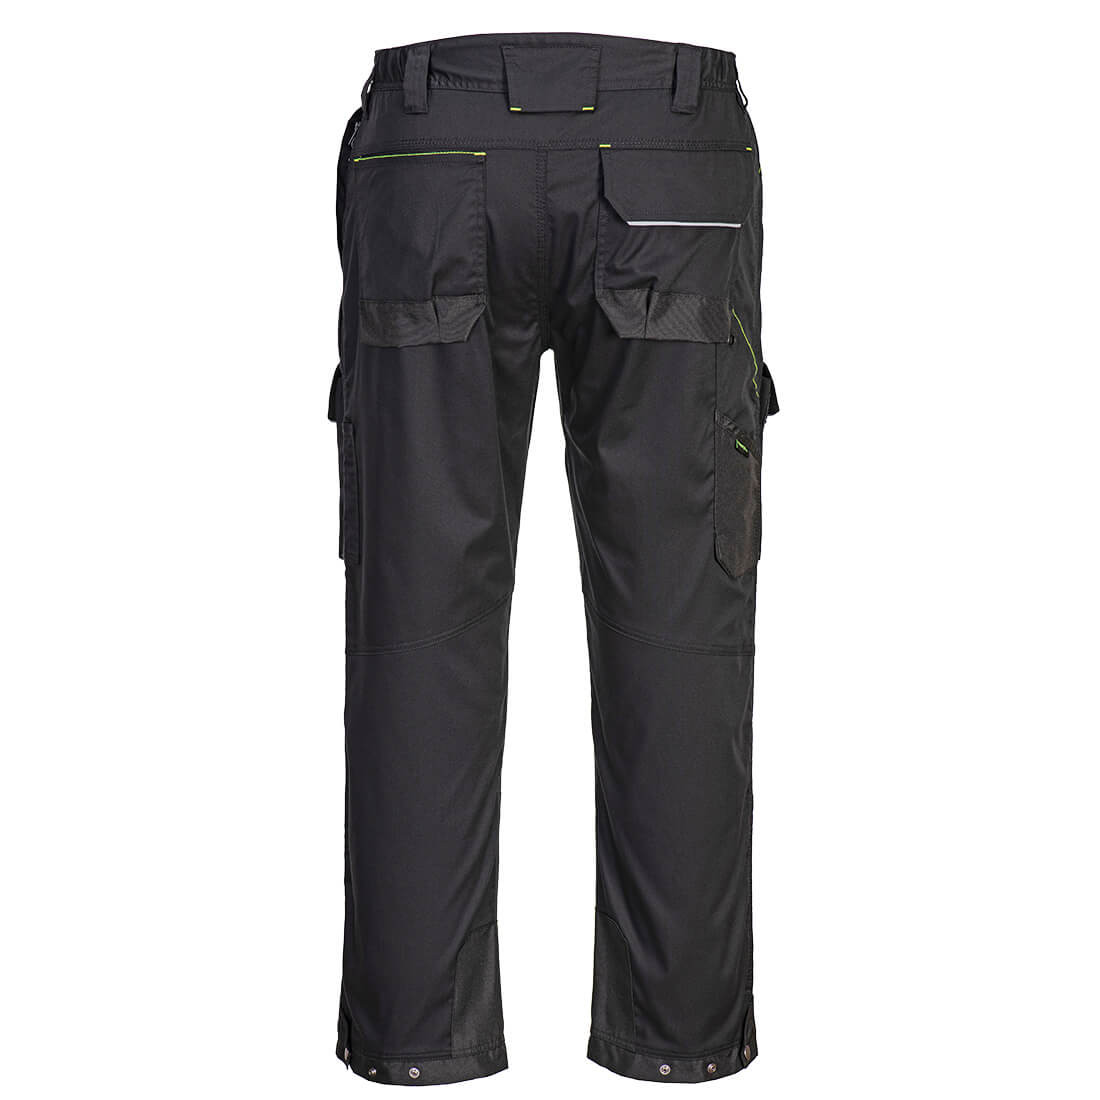 Pantalón cintura PW3 para uso con arnés - Ropa de protección